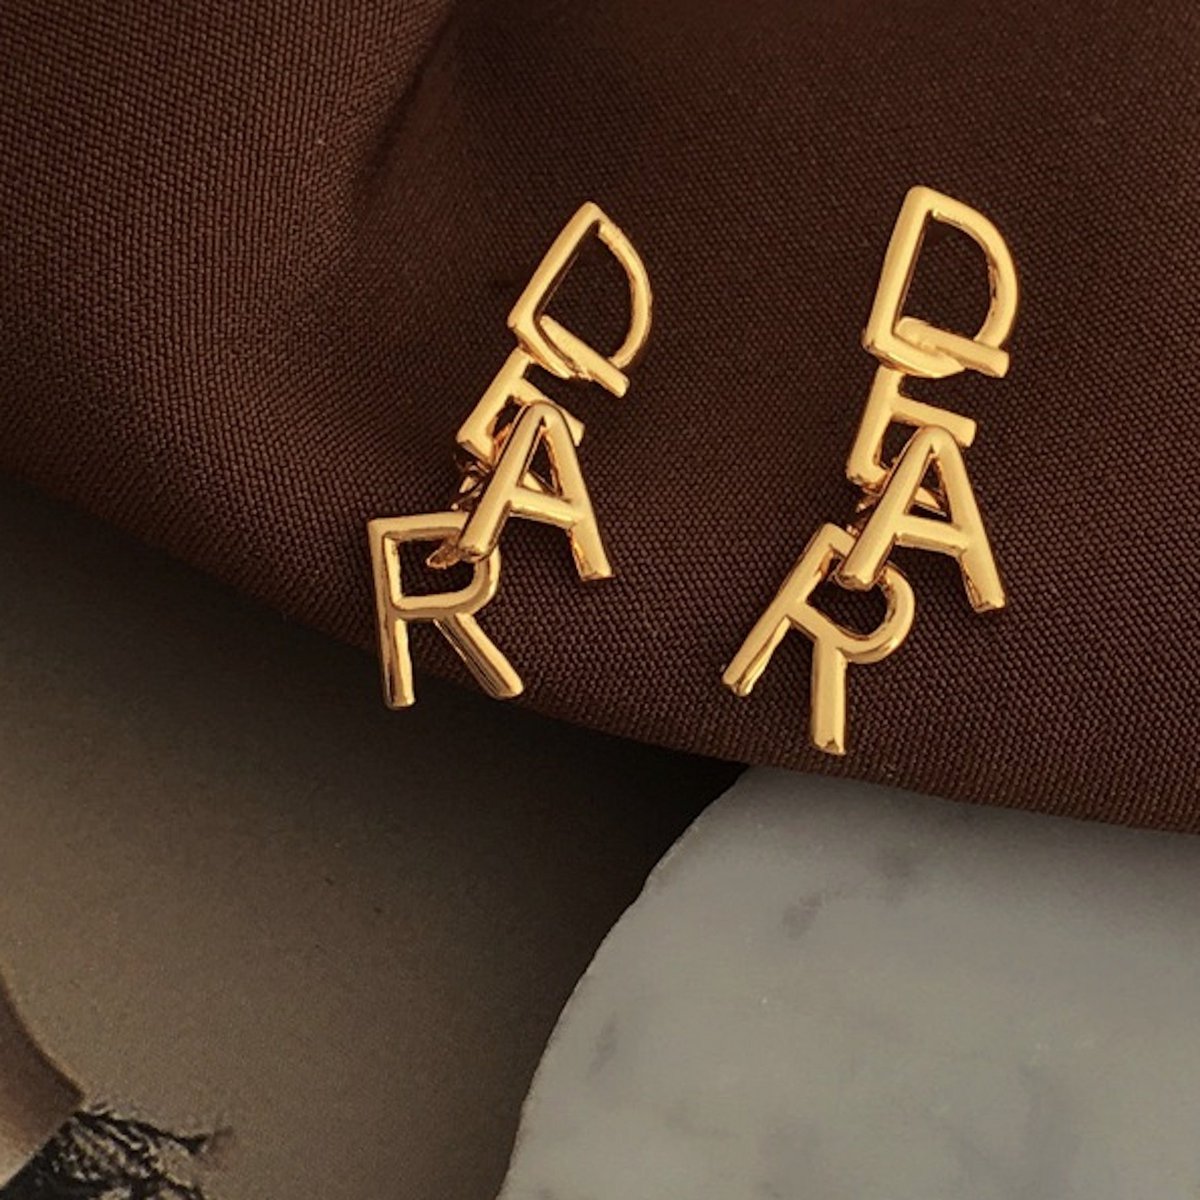 Met elkaar verweven DEAR-letters: romantische gouden oorbellen met een speelse, minimalistische essentie